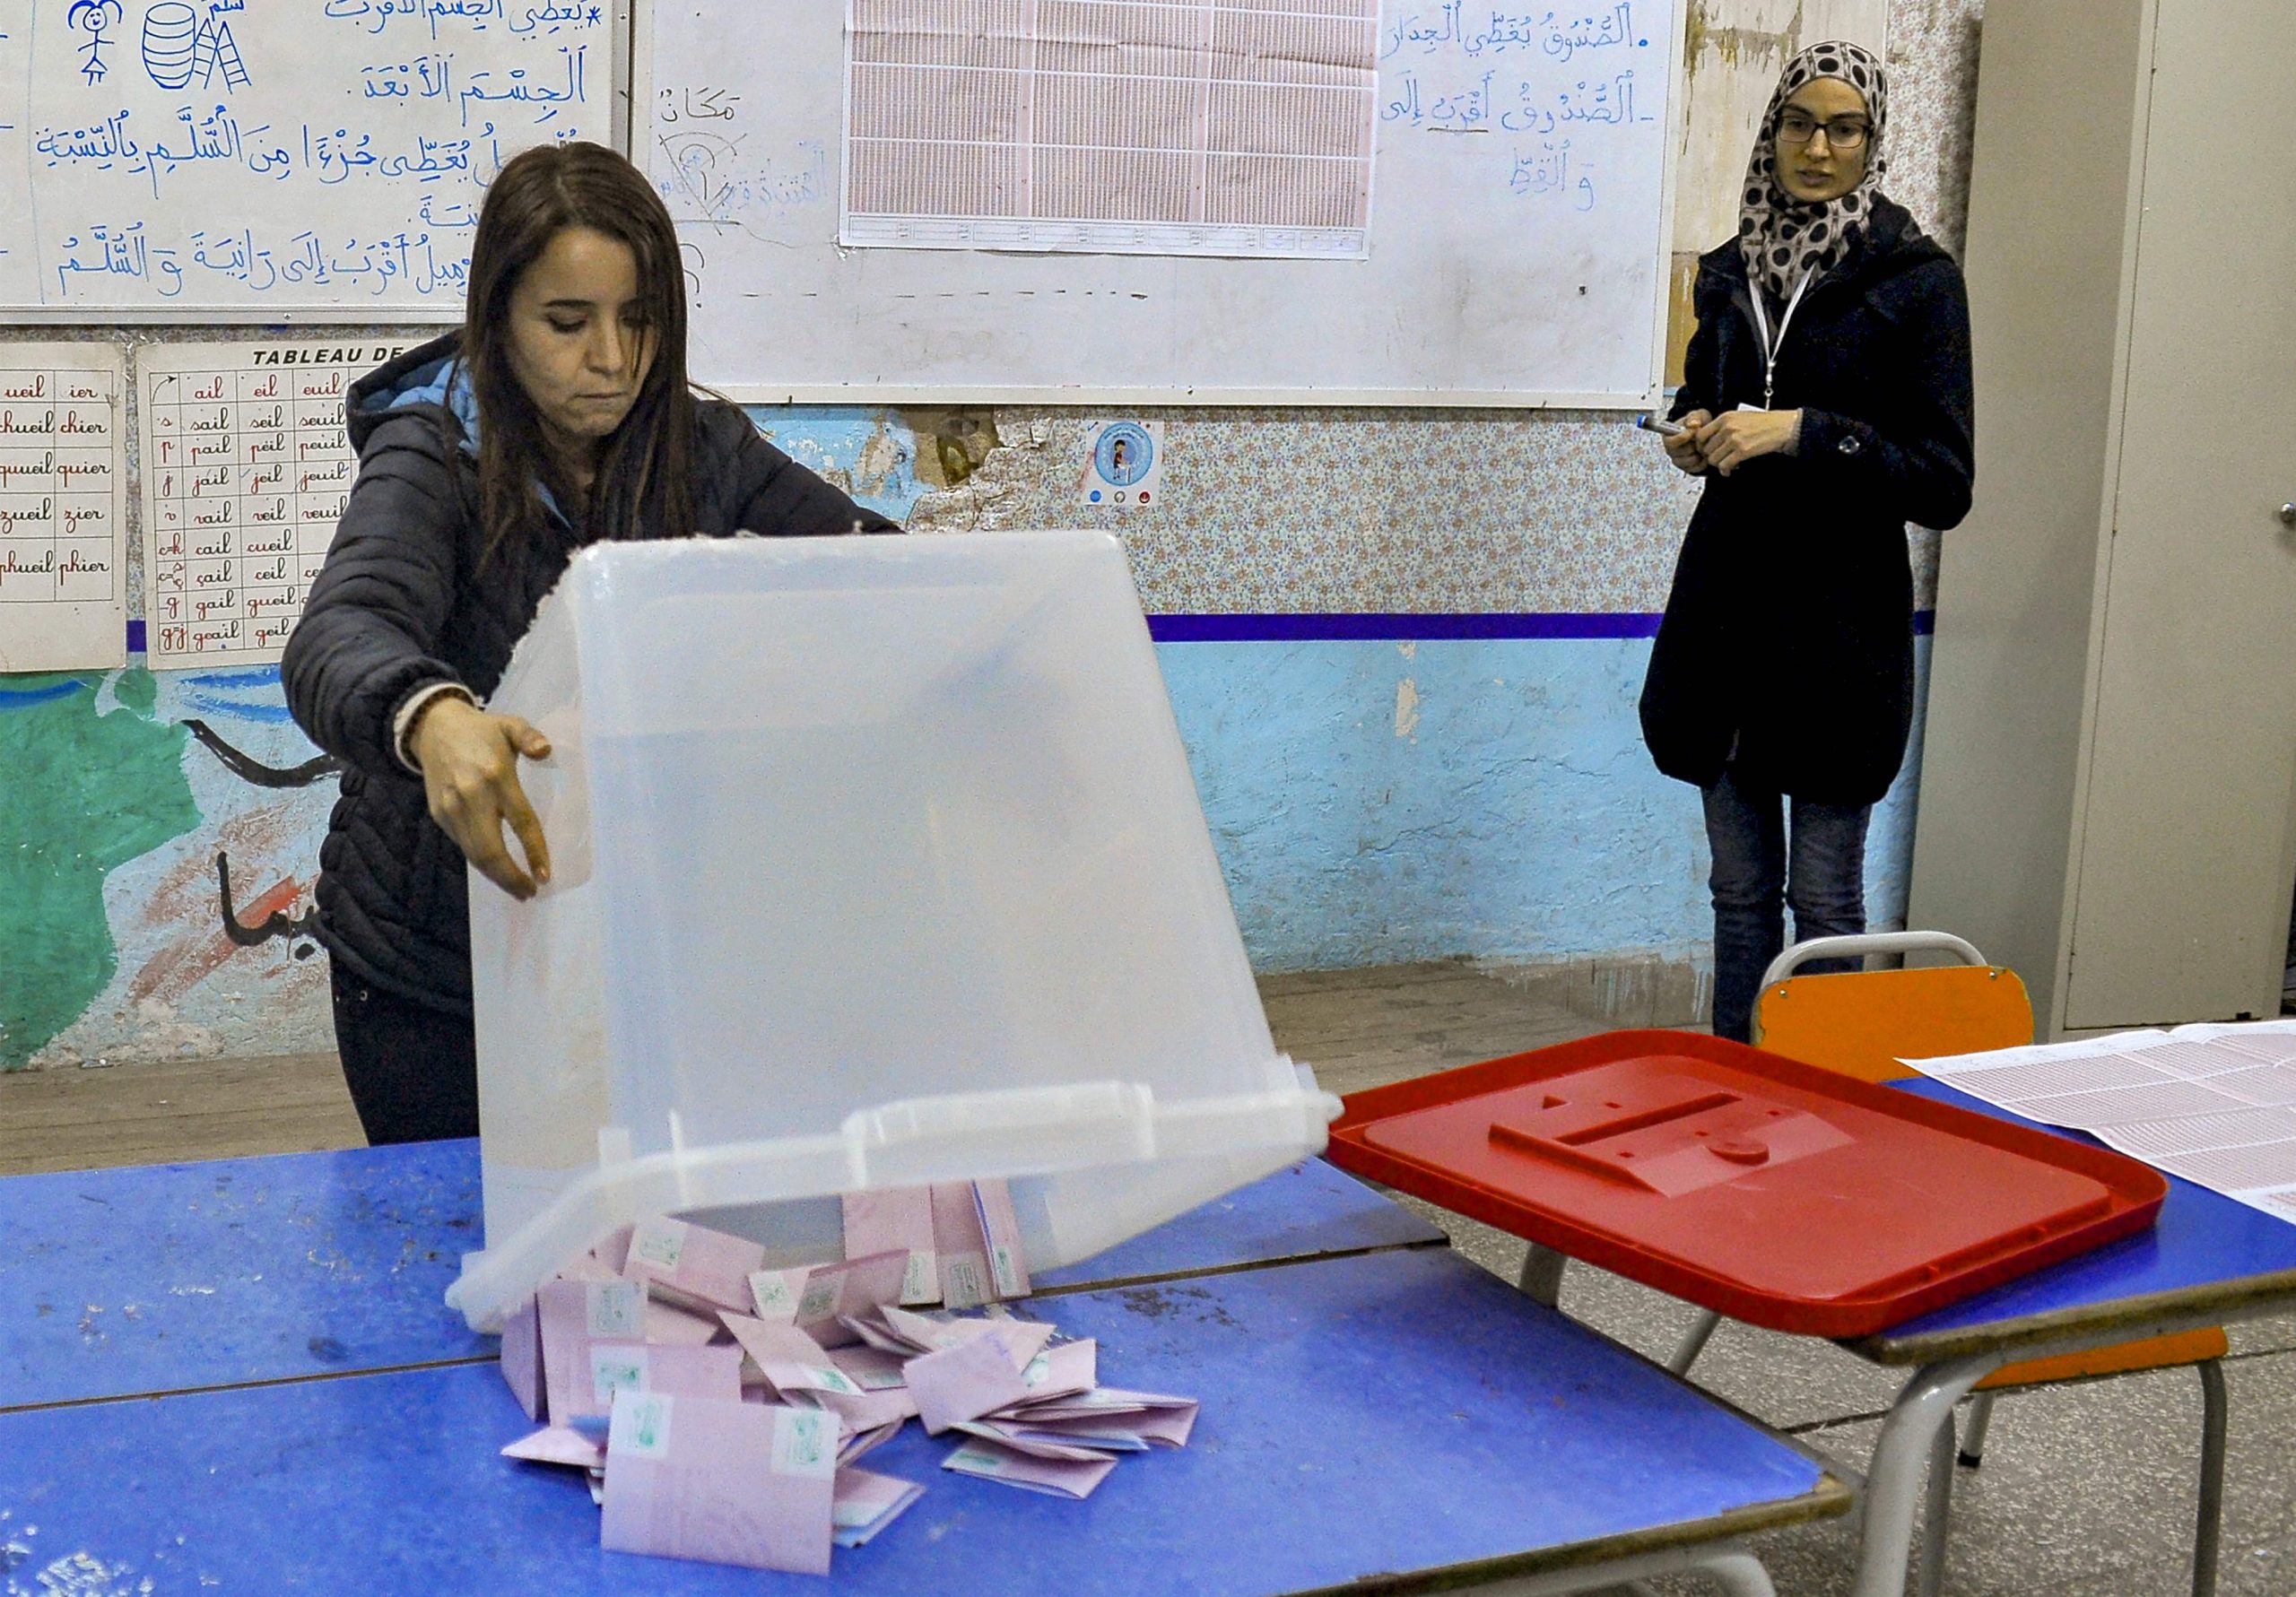 看世界／突尼西亚新国会选举 投票率8.8%创新低